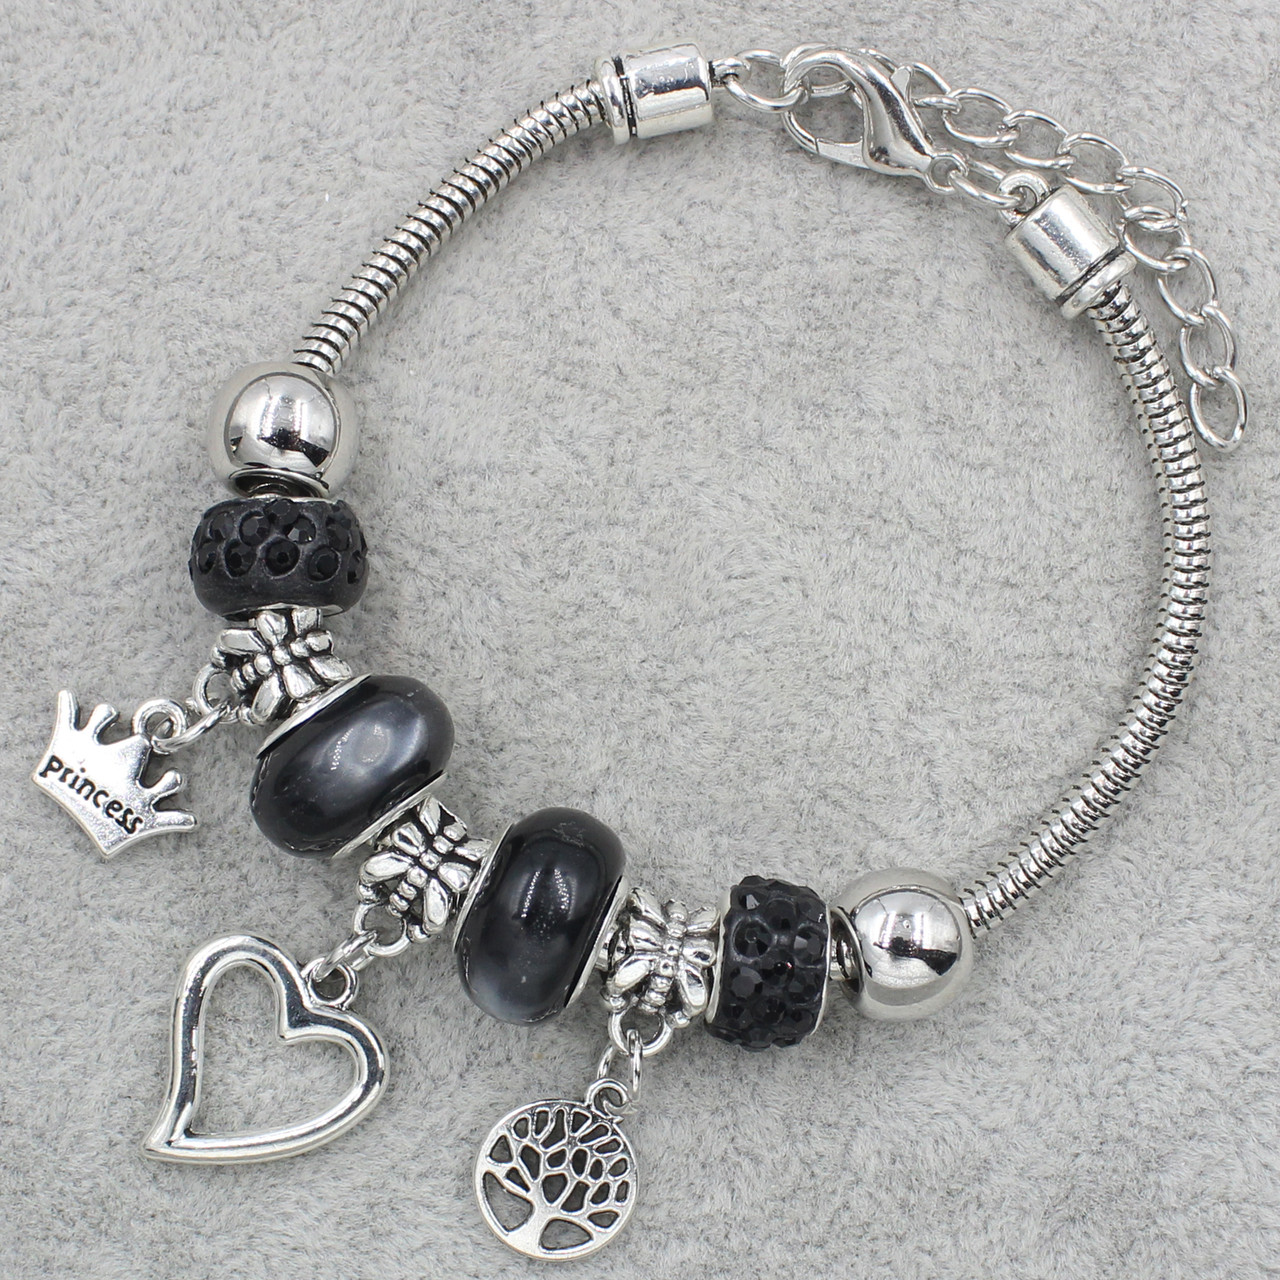 Pandora браслет серебристого цвета сердечко с черными шармами 9 штук длина браслета 22 см ширина 3 мм